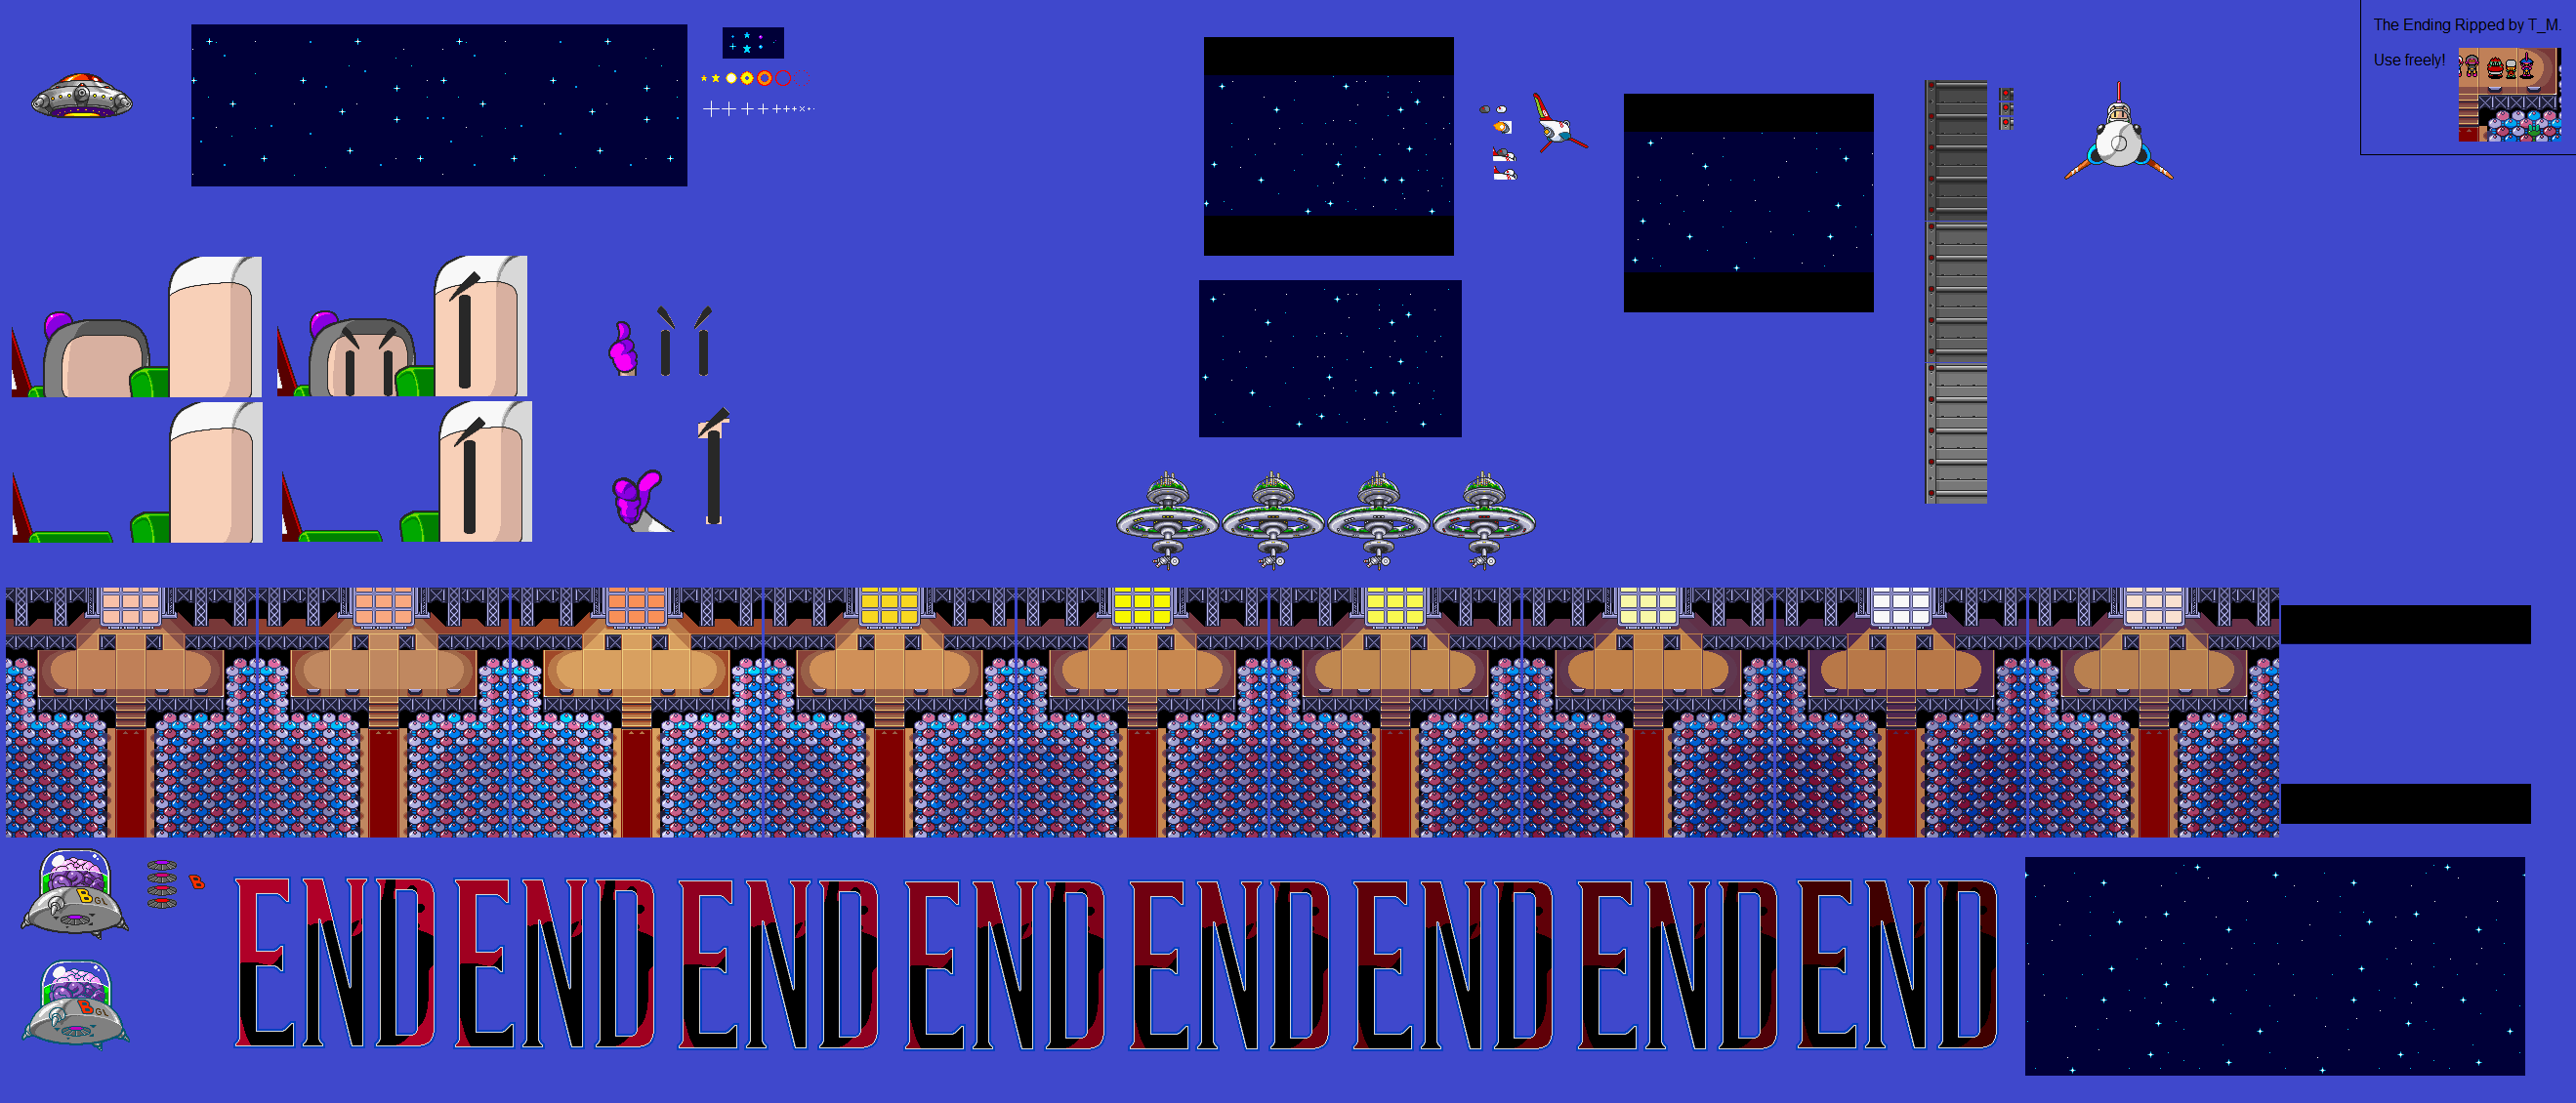 Super Bomberman 3 - Ending